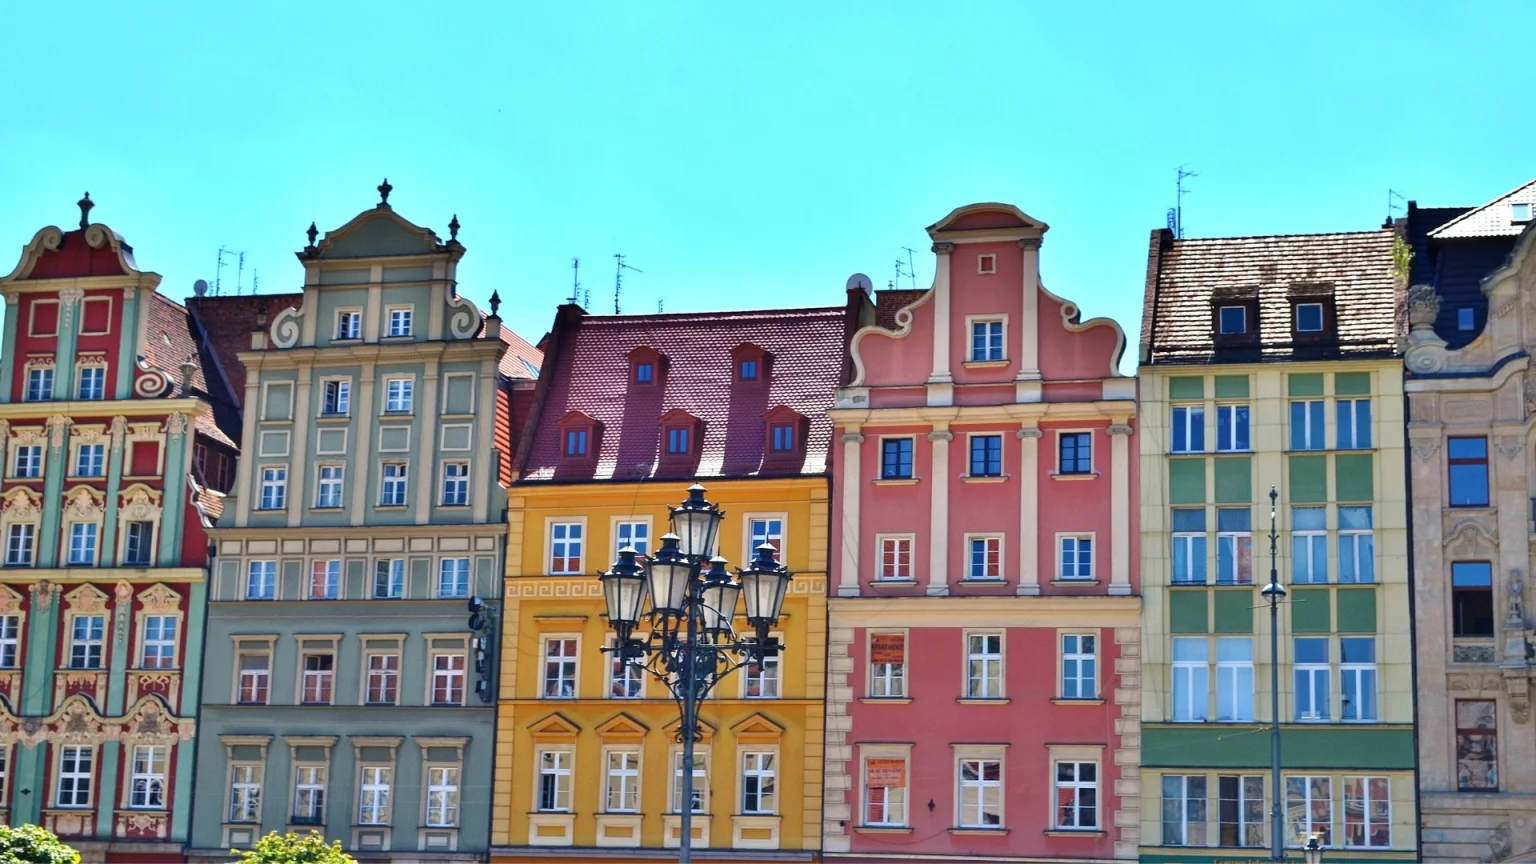 polonia wroclaw palazzi città vecchia centro storico